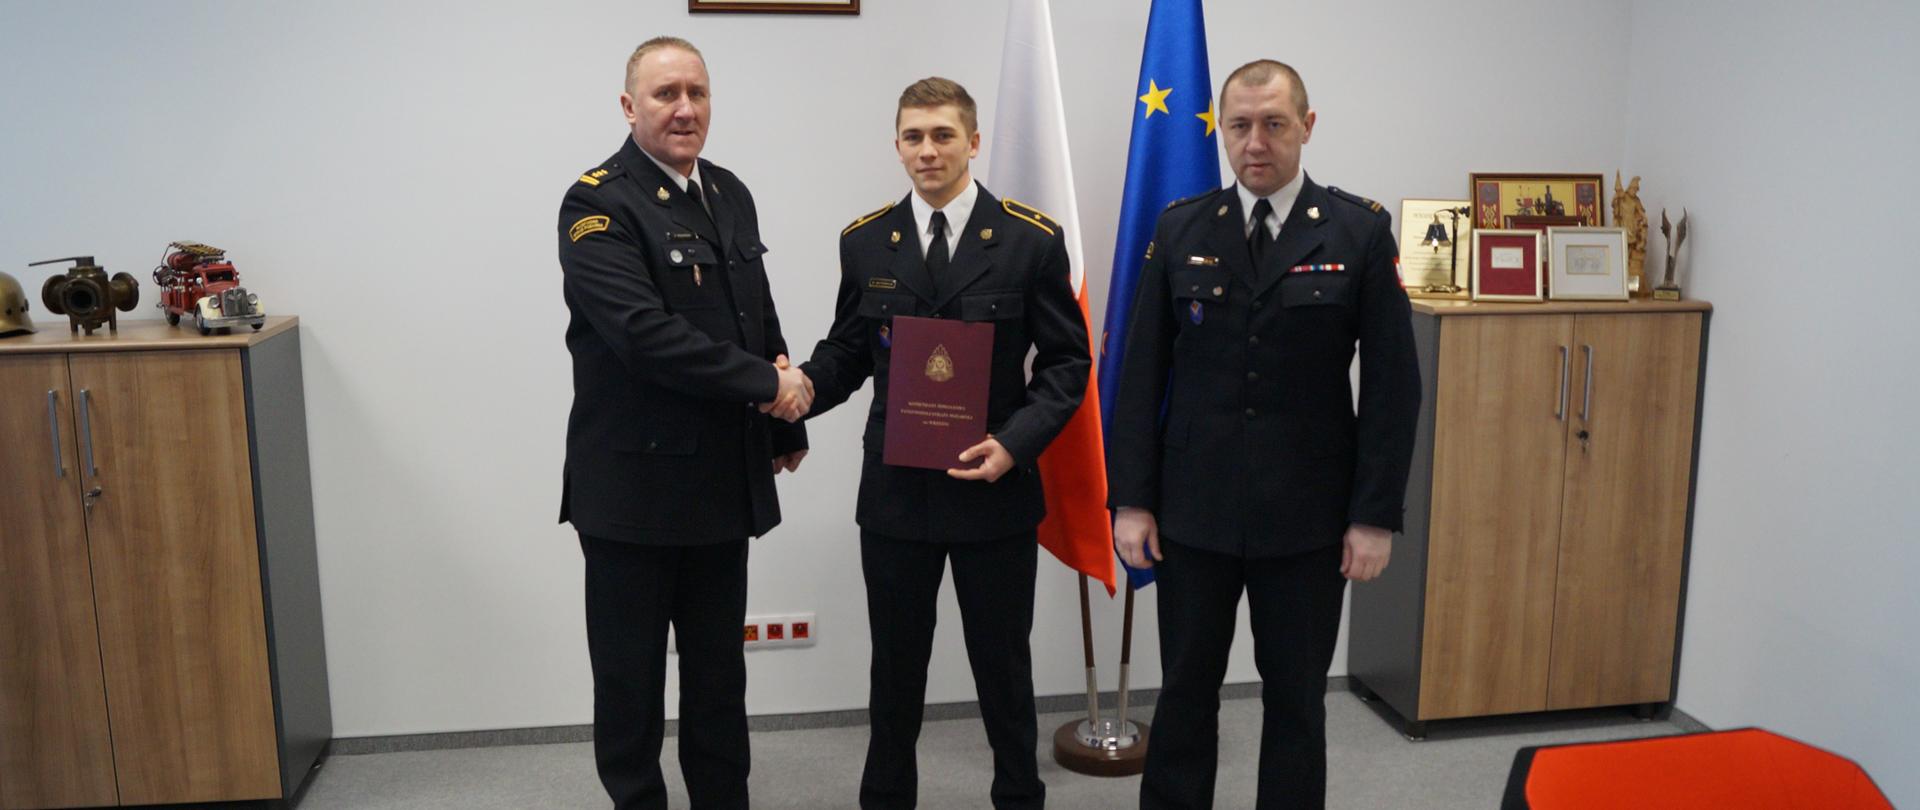 Zdjęcie przedstawia trzech strażaków w mundurach wyjściowych stojących na tle godła państwowego, flagi Polski i Unii Europejskiej